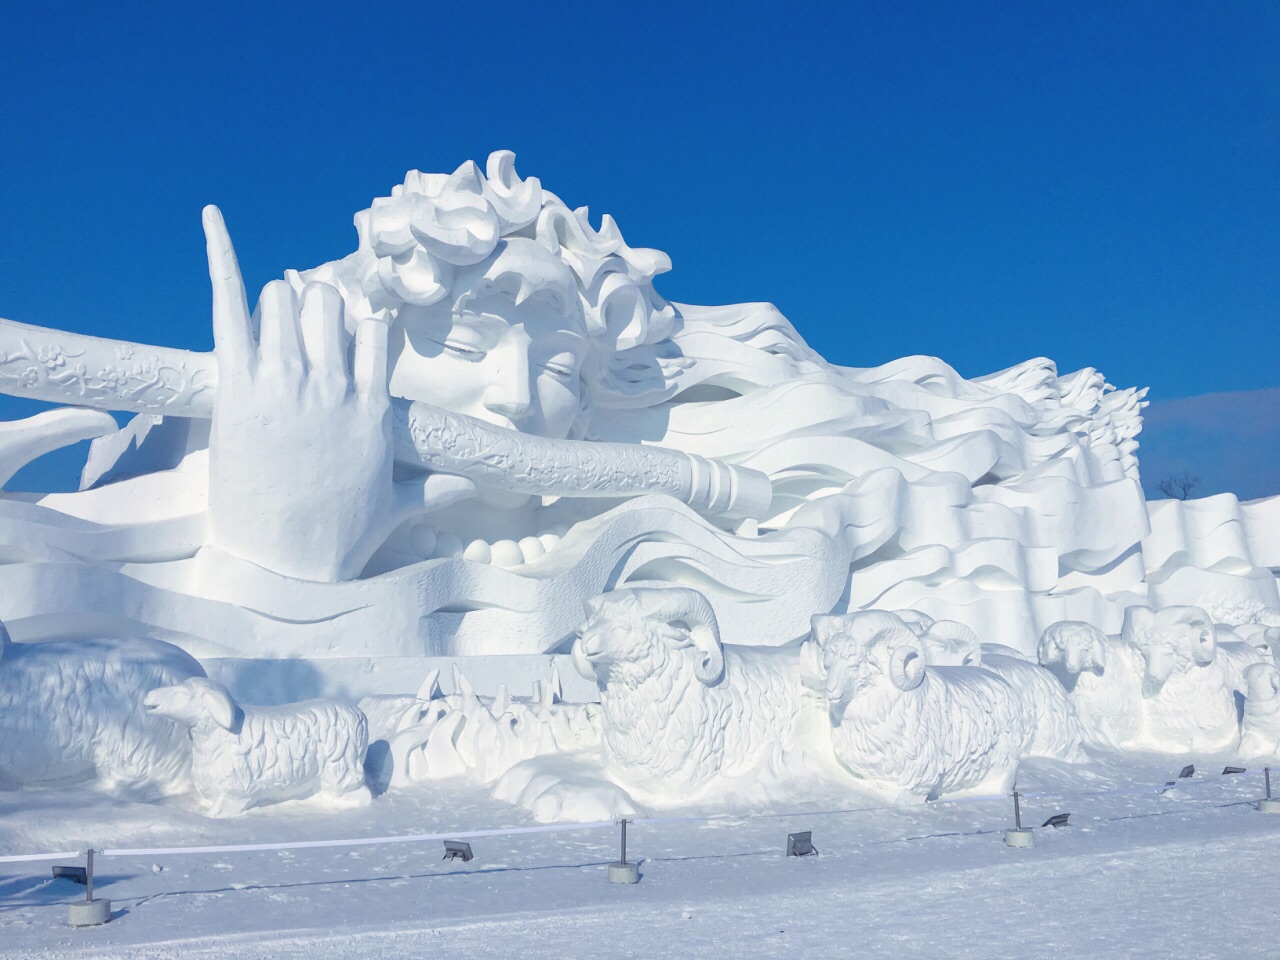 【携程攻略】哈尔滨太阳岛雪博会景点,我觉得去了冰雪大世界就不用去